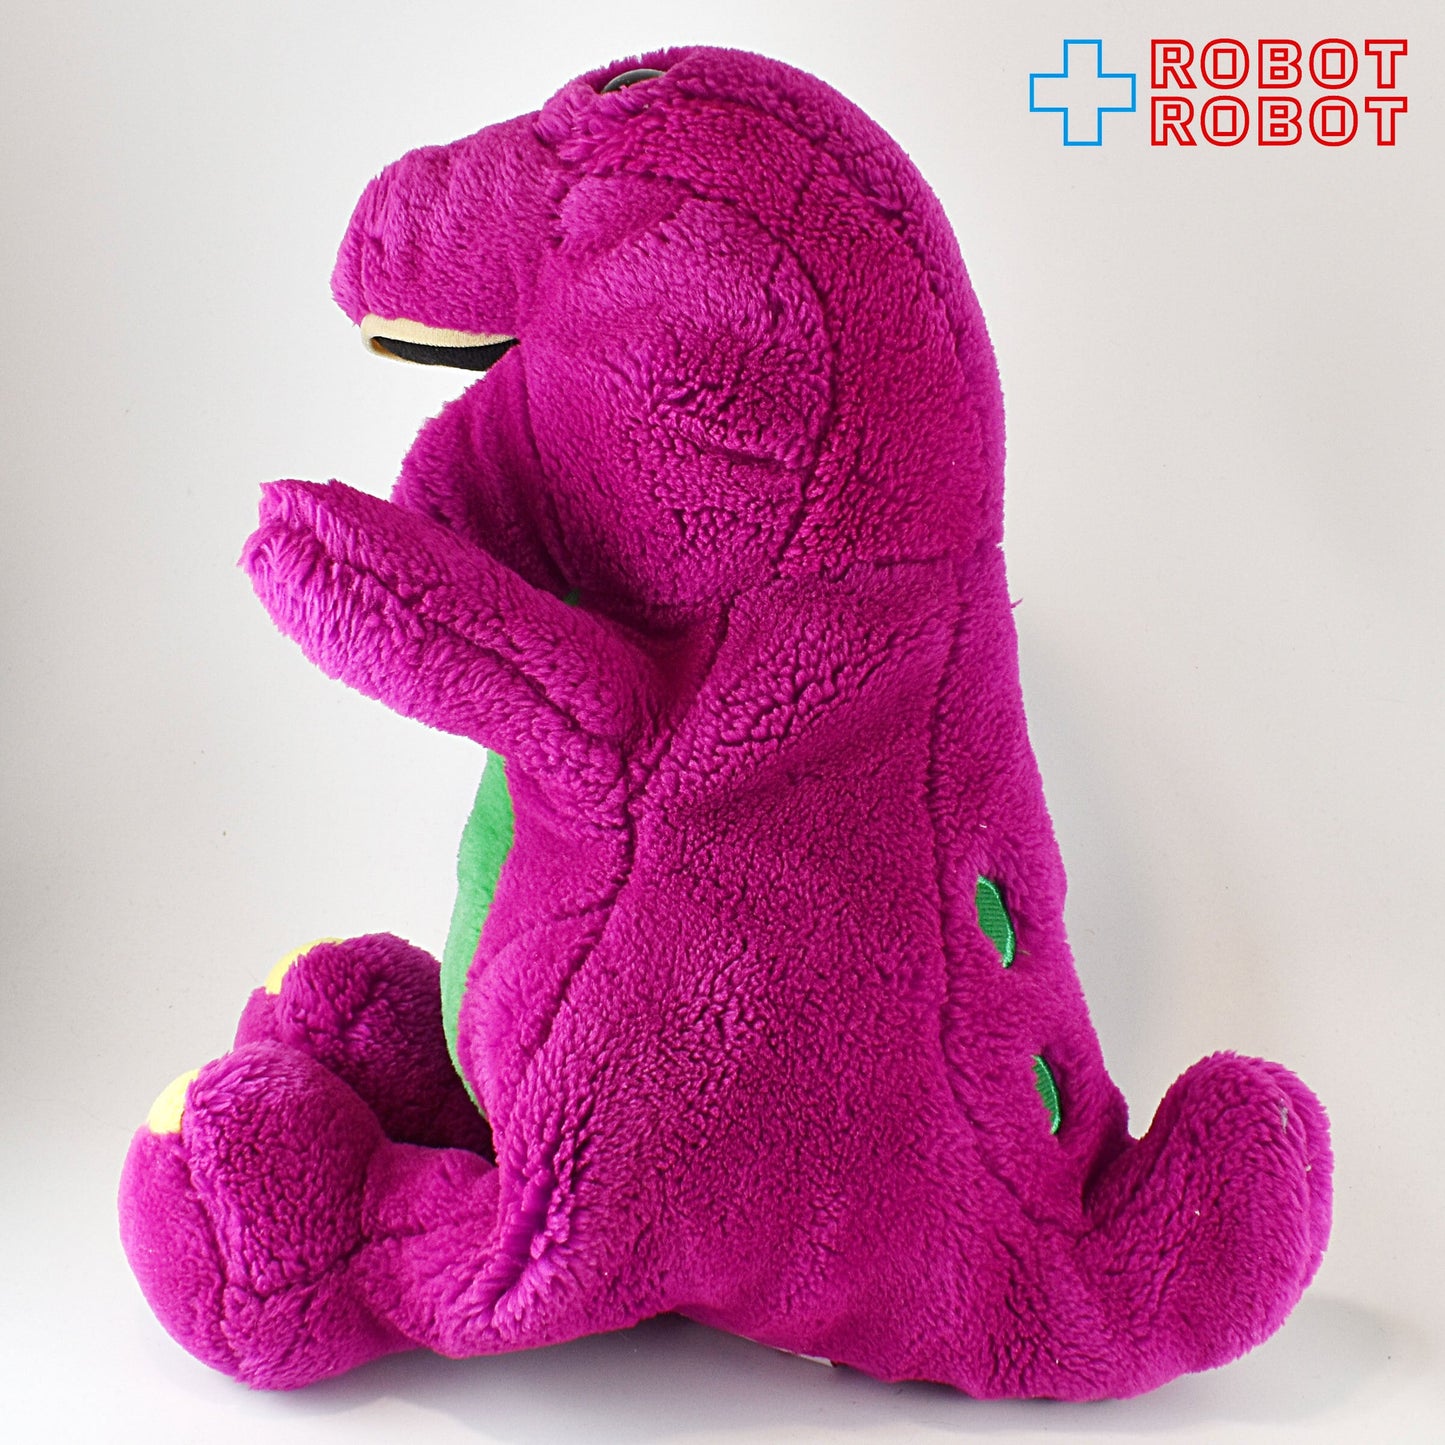 DAKIN 紫の恐竜バーニー ぬいぐるみ人形 27cm